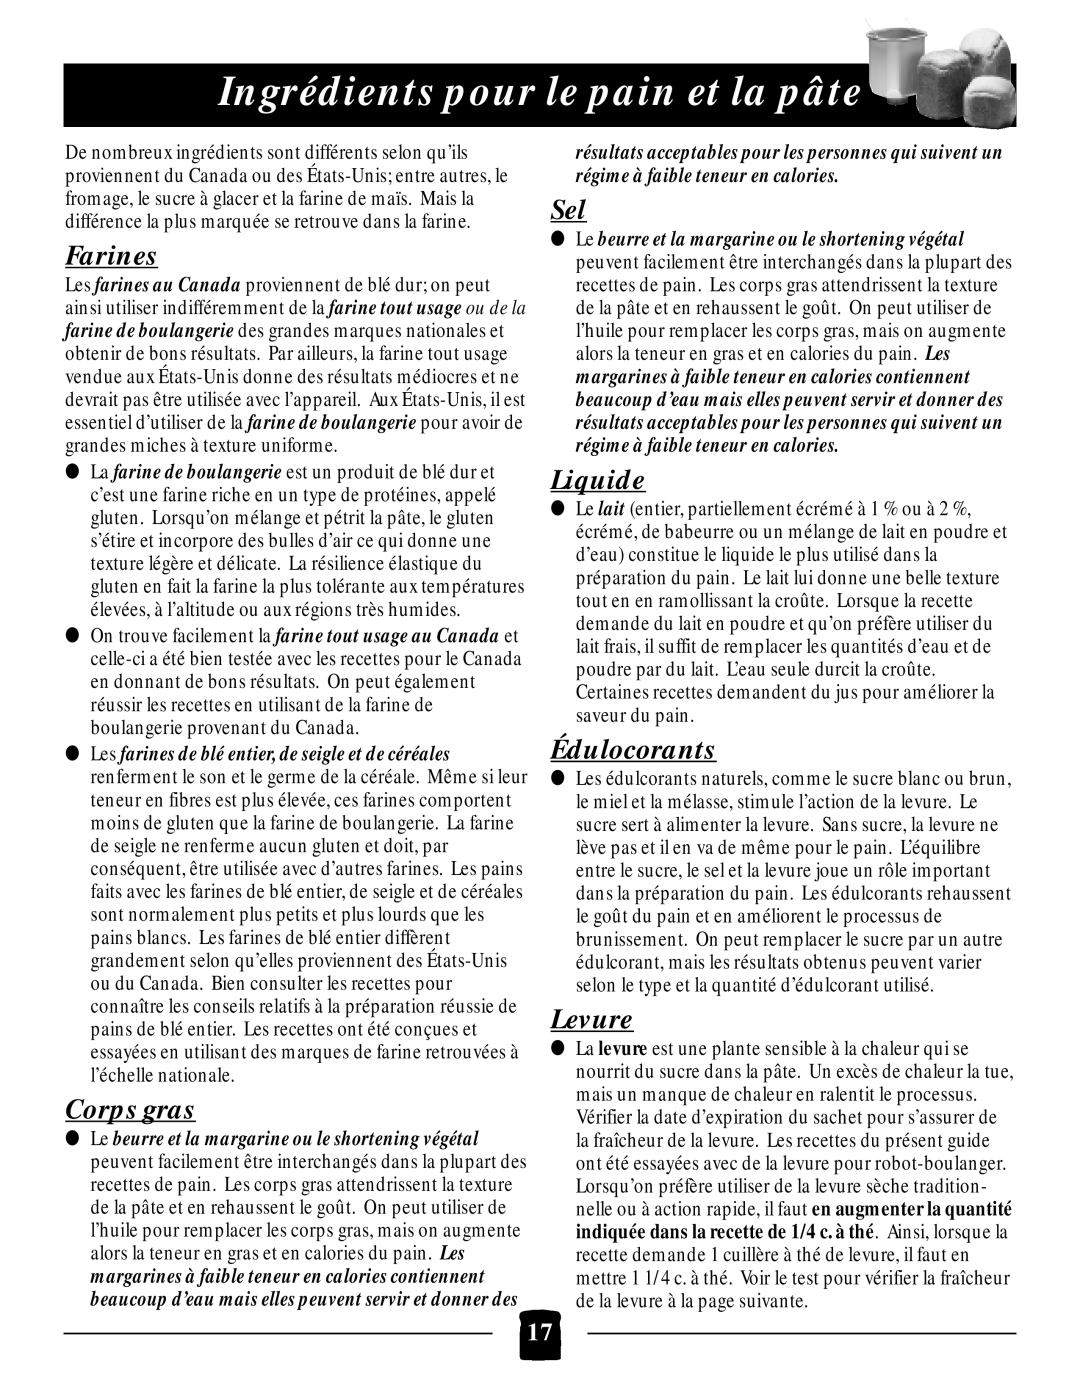 Black & Decker B1650 manual Ingrédients pour le pain et la pâte, Farines, Corps gras, Liquide, Édulocorants, Levure 